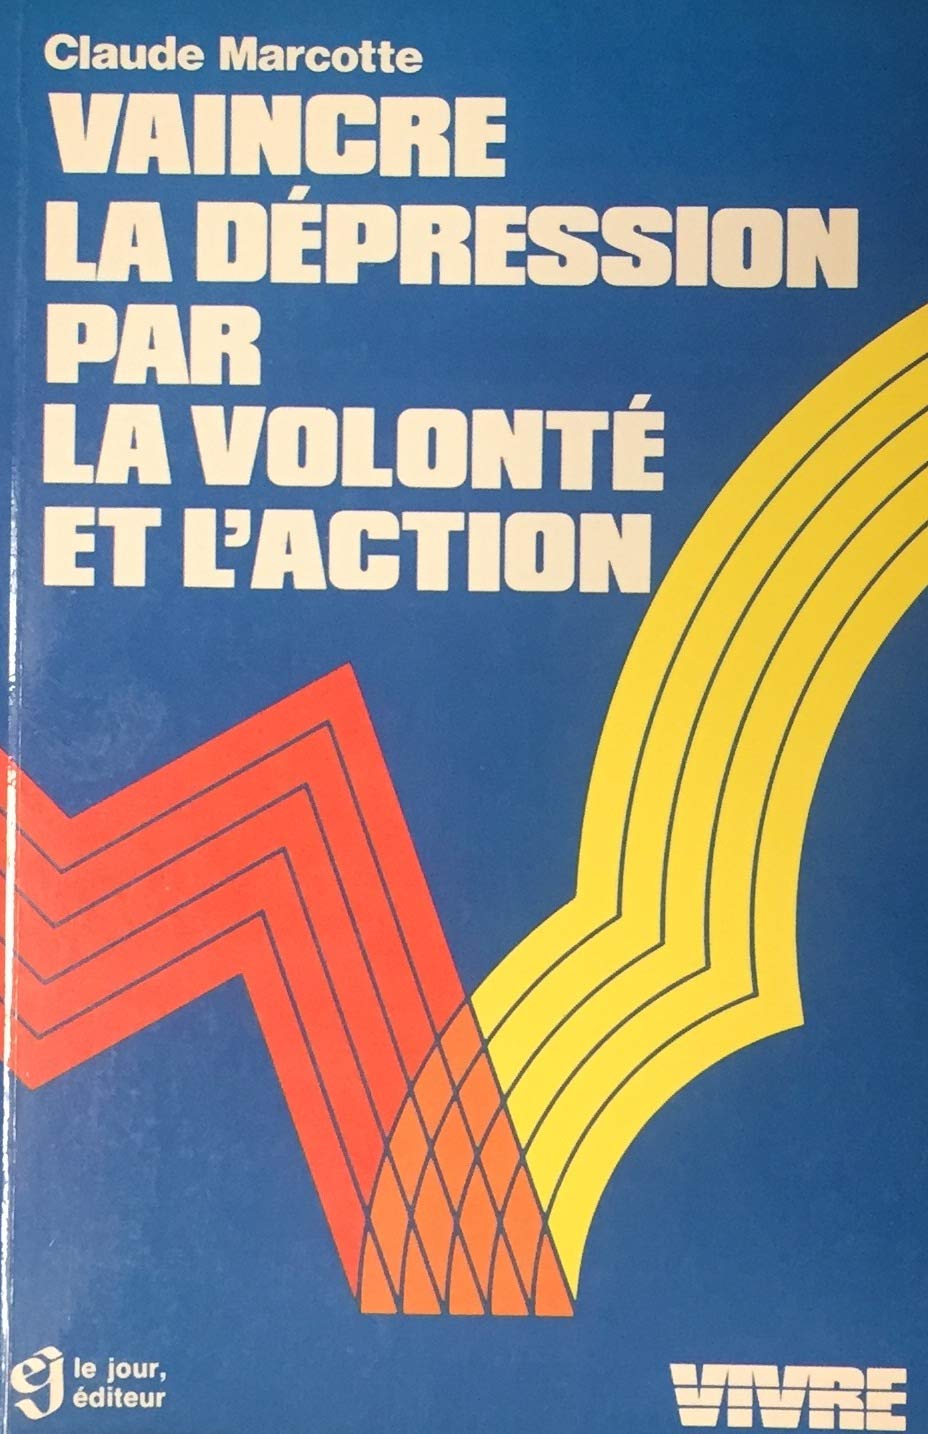 Livre ISBN 2890440834 Vivre : Vaincre la dépression par la volonté d'action (Claude Marcotte)